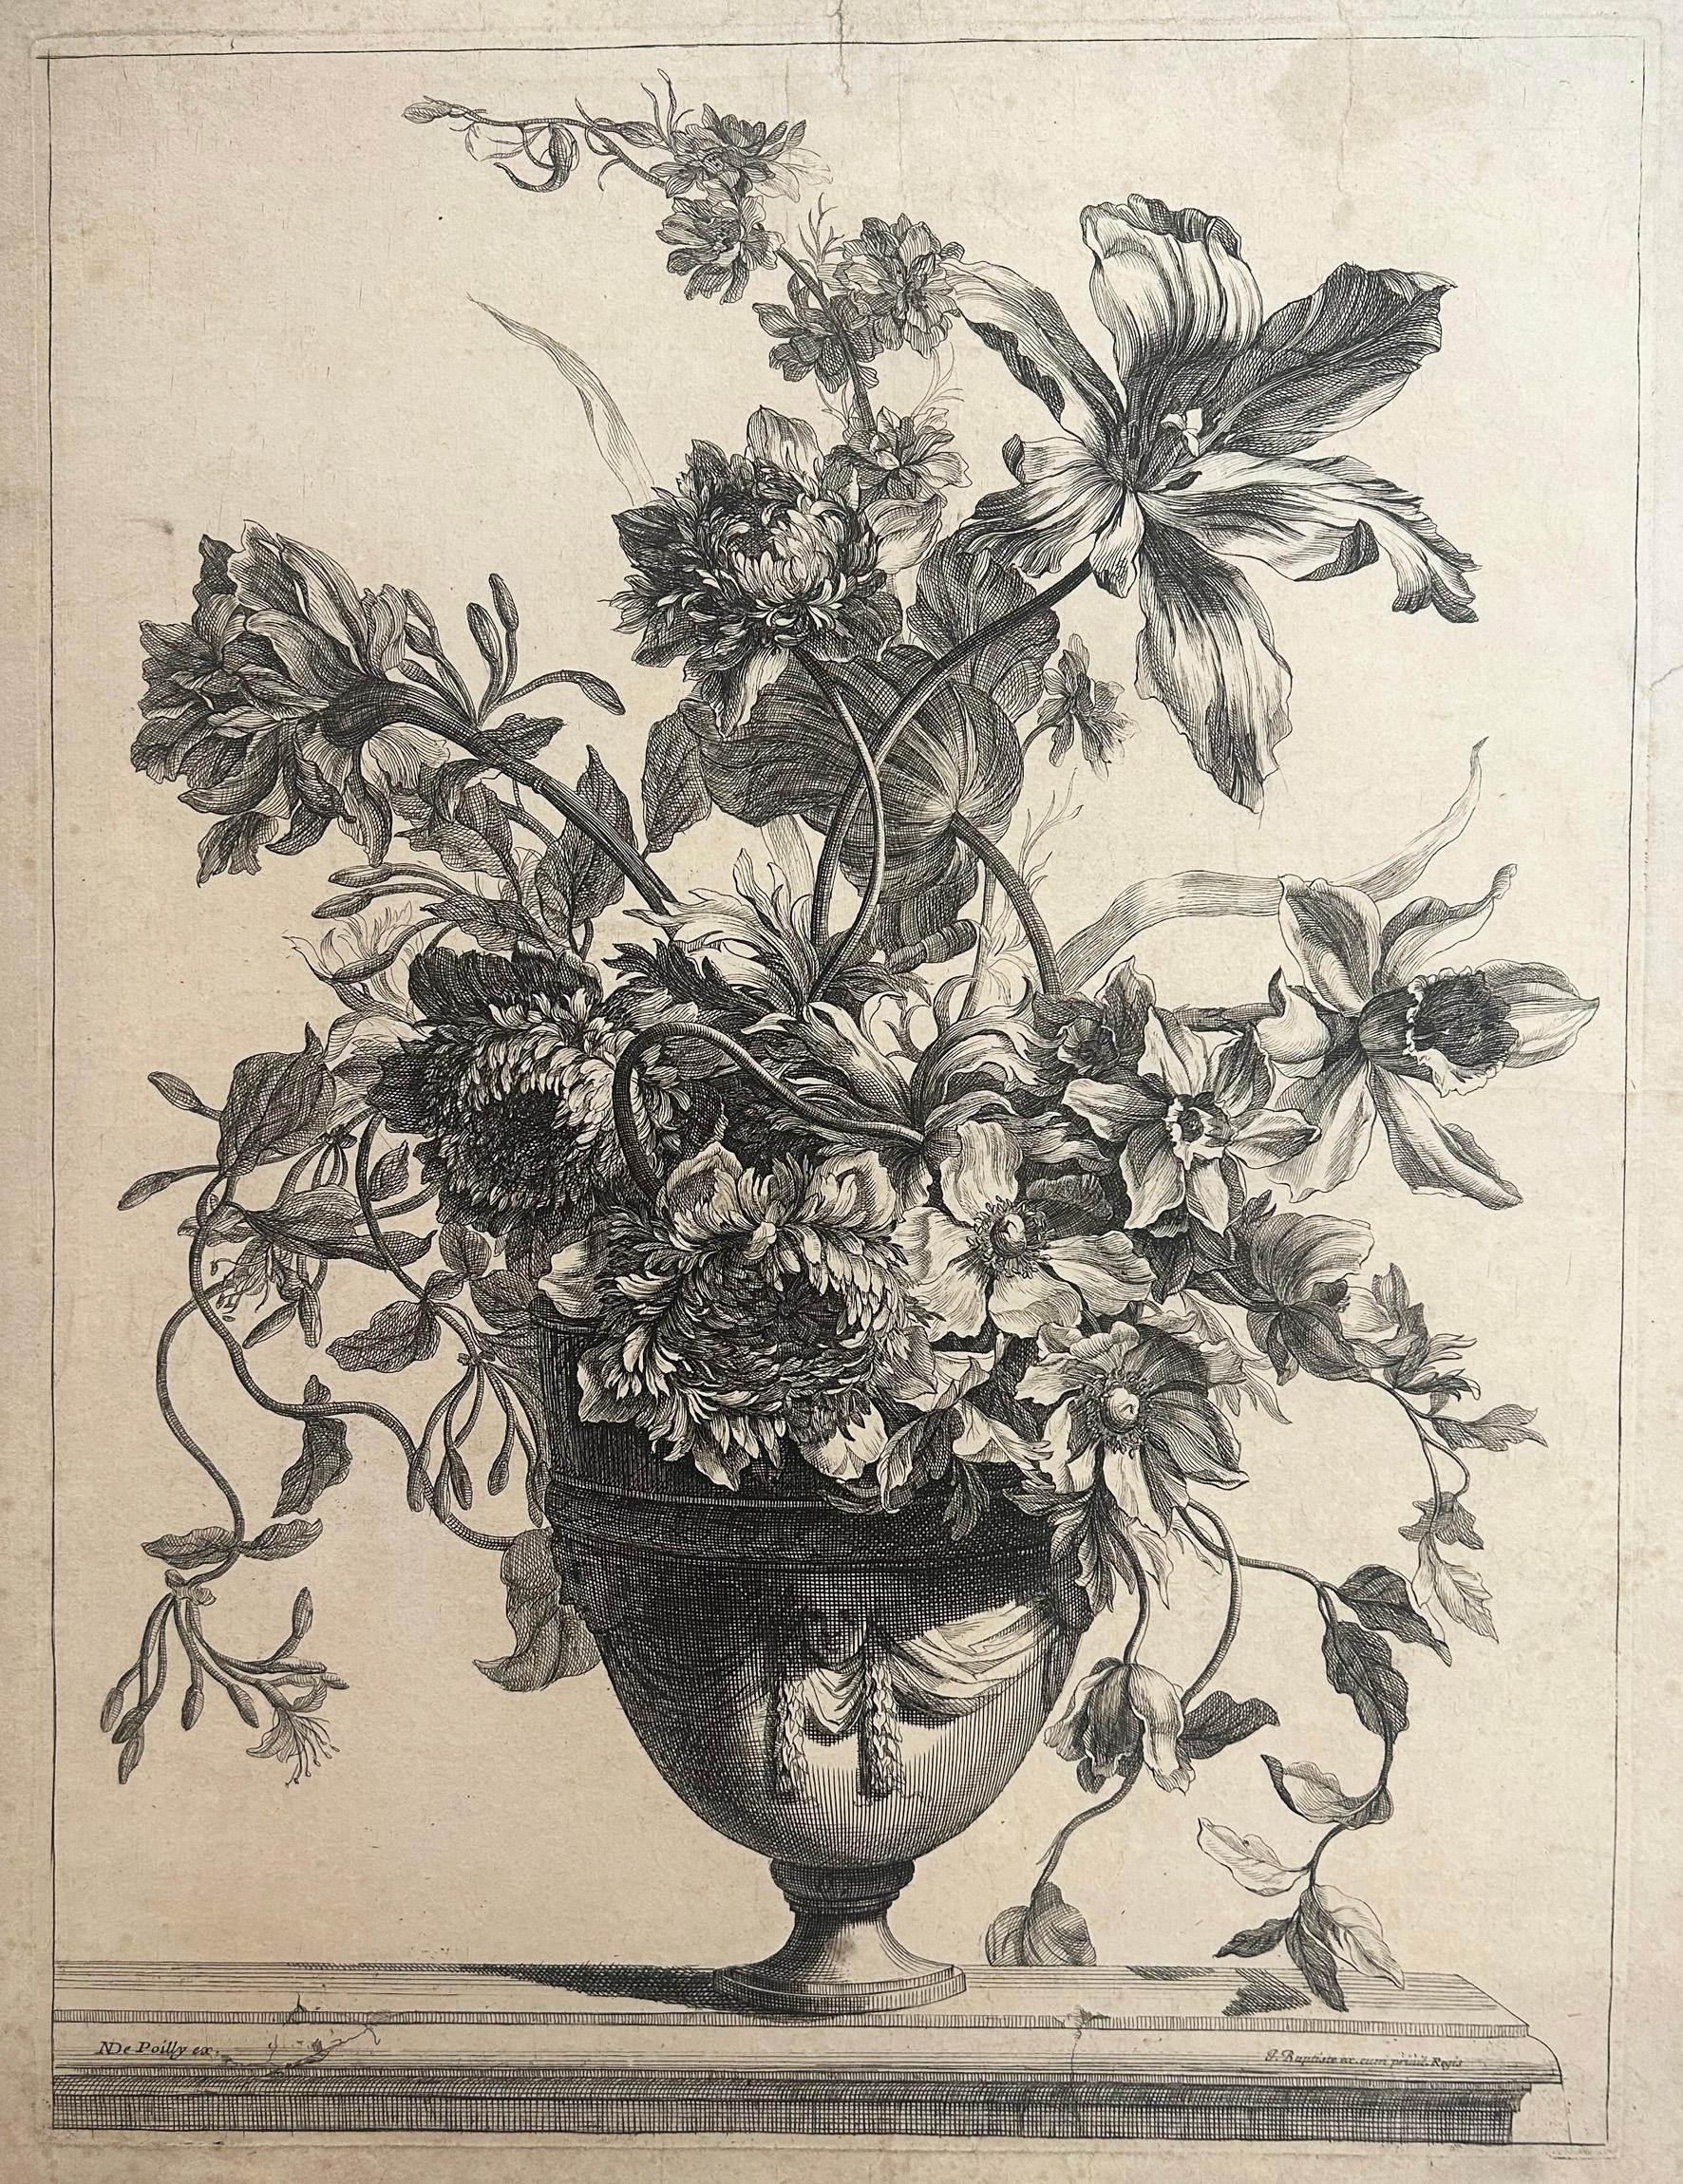 MONNOYER Jean-Baptiste
Lille 1636 † Londres 1699
Vase orné de trois mascarons drapés; garni de tulipes, anémones et pavots.
Gravure originale à l'eau-forte et au burin.
Quelques déchirures marginales consolidées dont une atteignant un peu le sujet